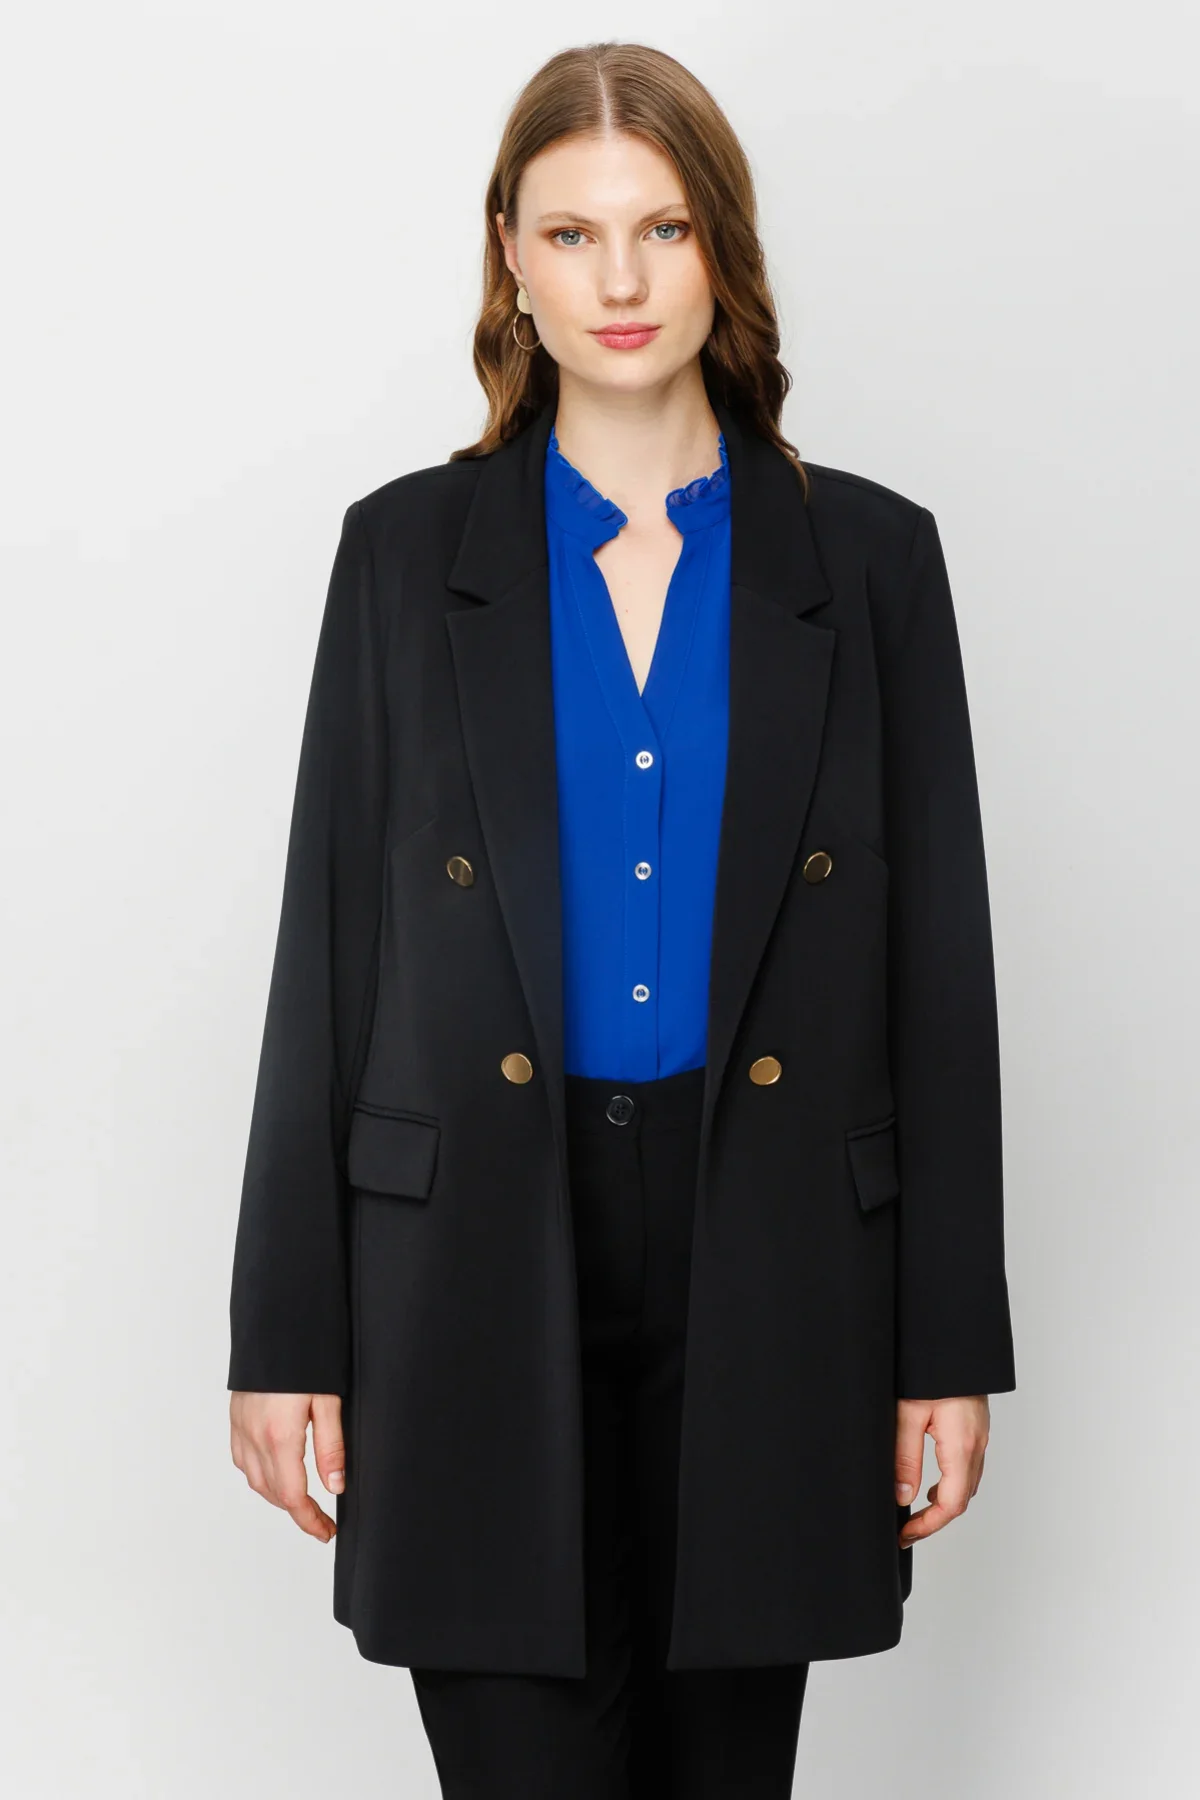 Kadın Uzun Blazer Ceket - Siyah - 4